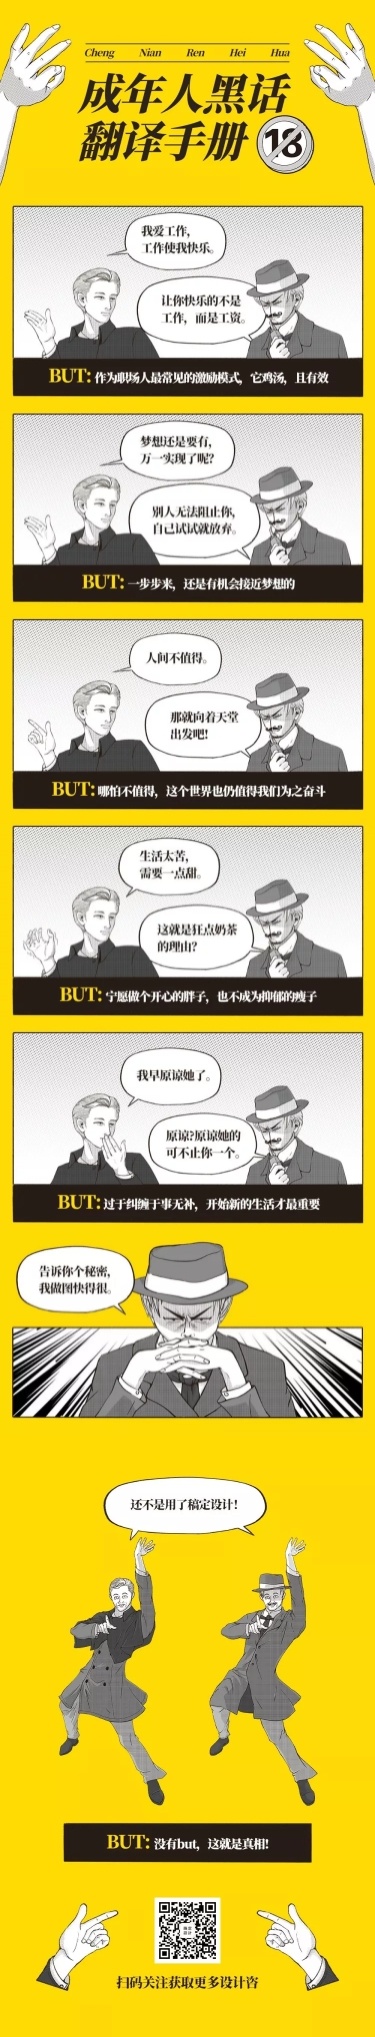 成年人黑话翻译手册指南卡通漫画条漫文章长图